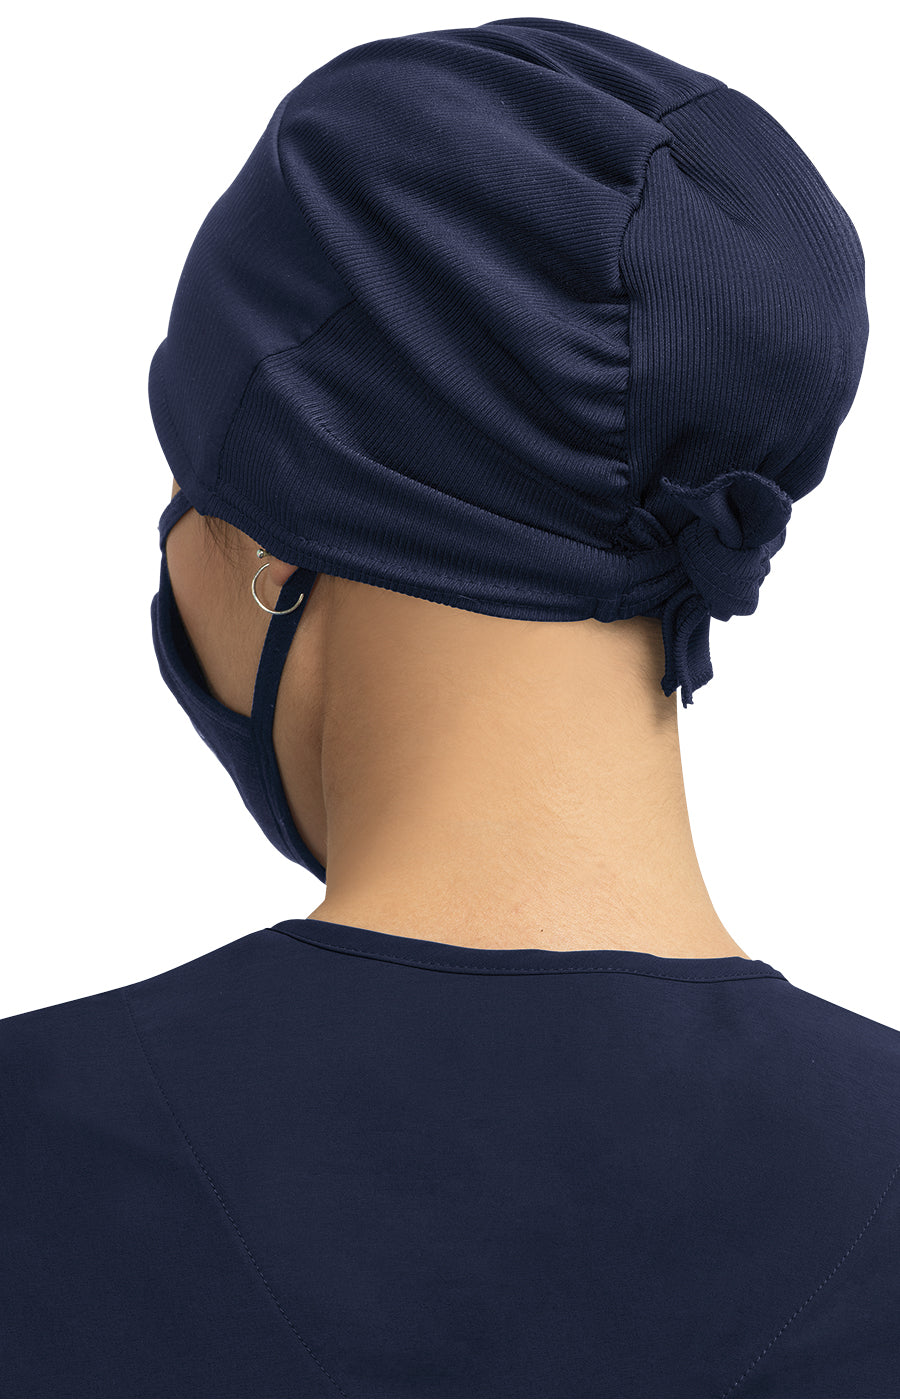 Koi - Unisex Surgical Hat Scrub Cap Koi   